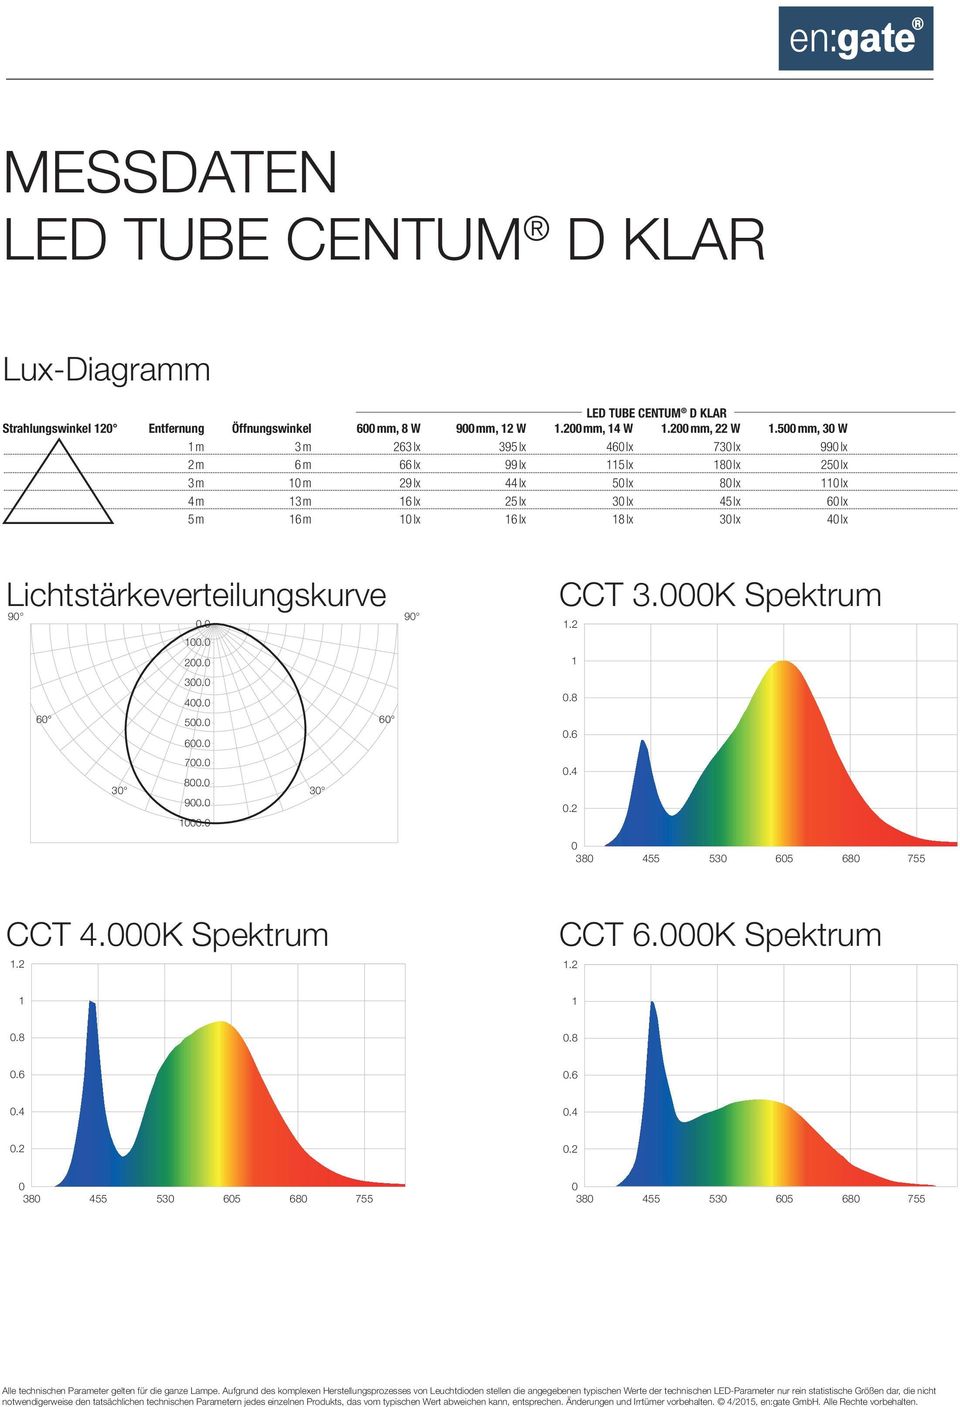 lx 6 lx 8 lx 3 lx 4 lx Lichtstärkeverteilungskurve 9.. 2. 3. 4. 6 5. 6 6. 7. 3 8. 9. 3. 9 CCT 3.K Spektrum.2.6 CCT 4.K Spektrum.2 CCT 6.K Spektrum.2.6.6 notwendigerweise den tatsächlichen technischen Parametern jedes einzelnen Produkts, das vom typischen Wert abweichen kann, entsprechen.